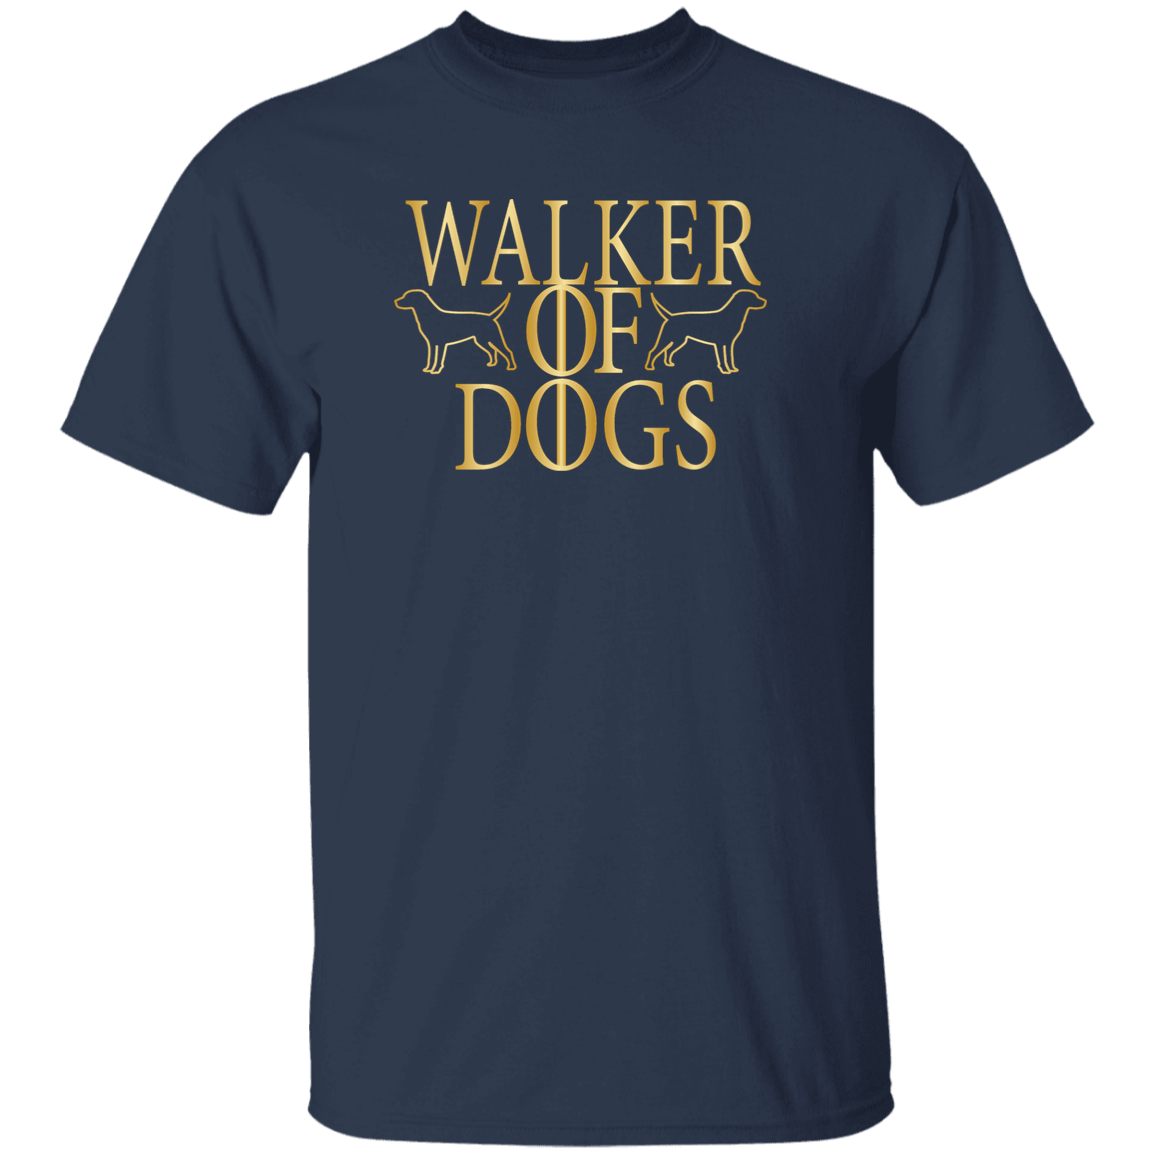 Walker Of Dogs - T Shirt.